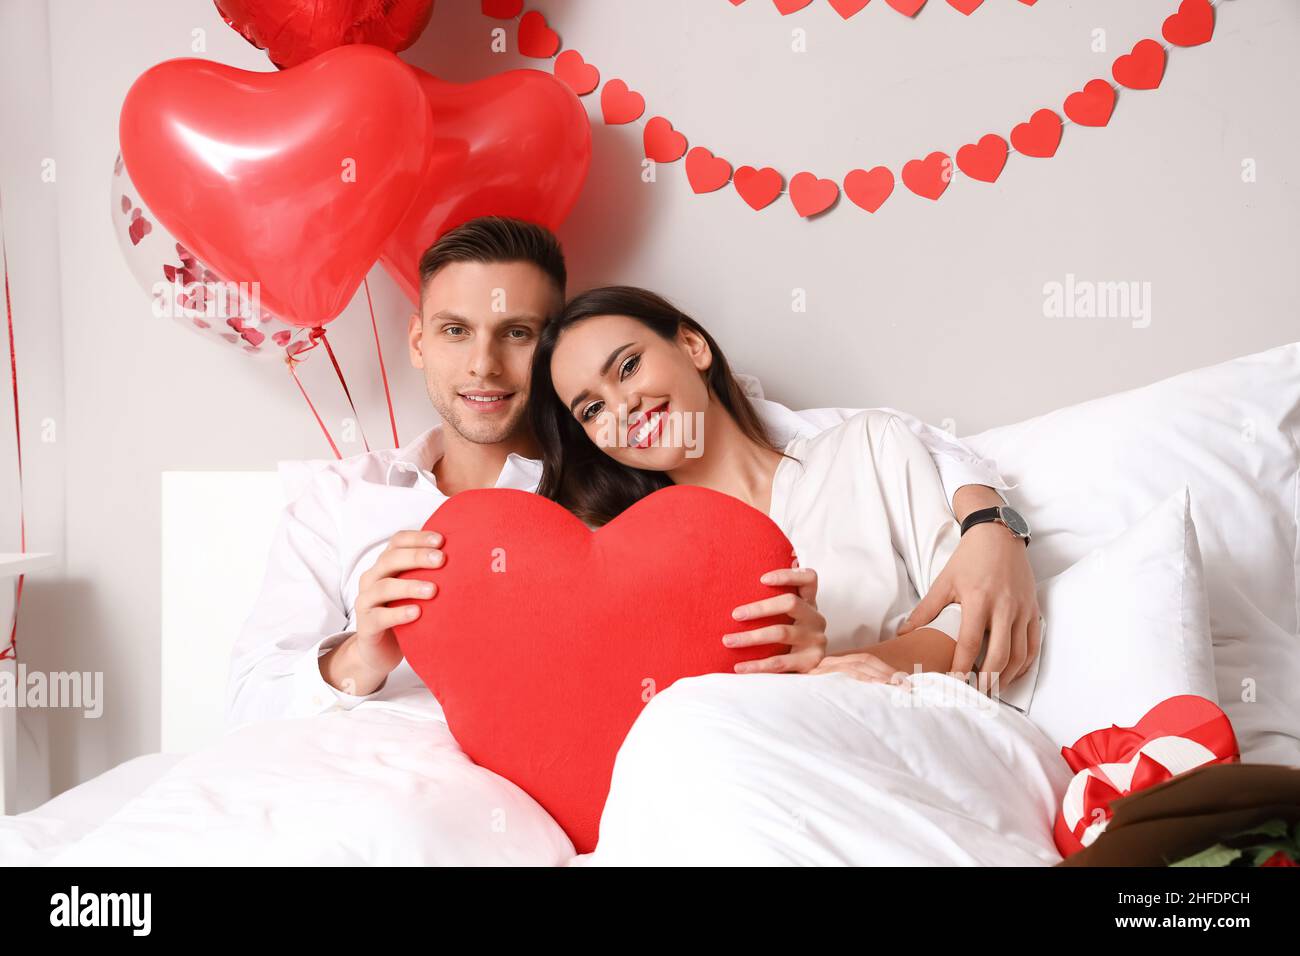 Concept De La Saint-valentin échange De Cadeaux Beau Jeune Couple Célébrant  La Saint-valentin